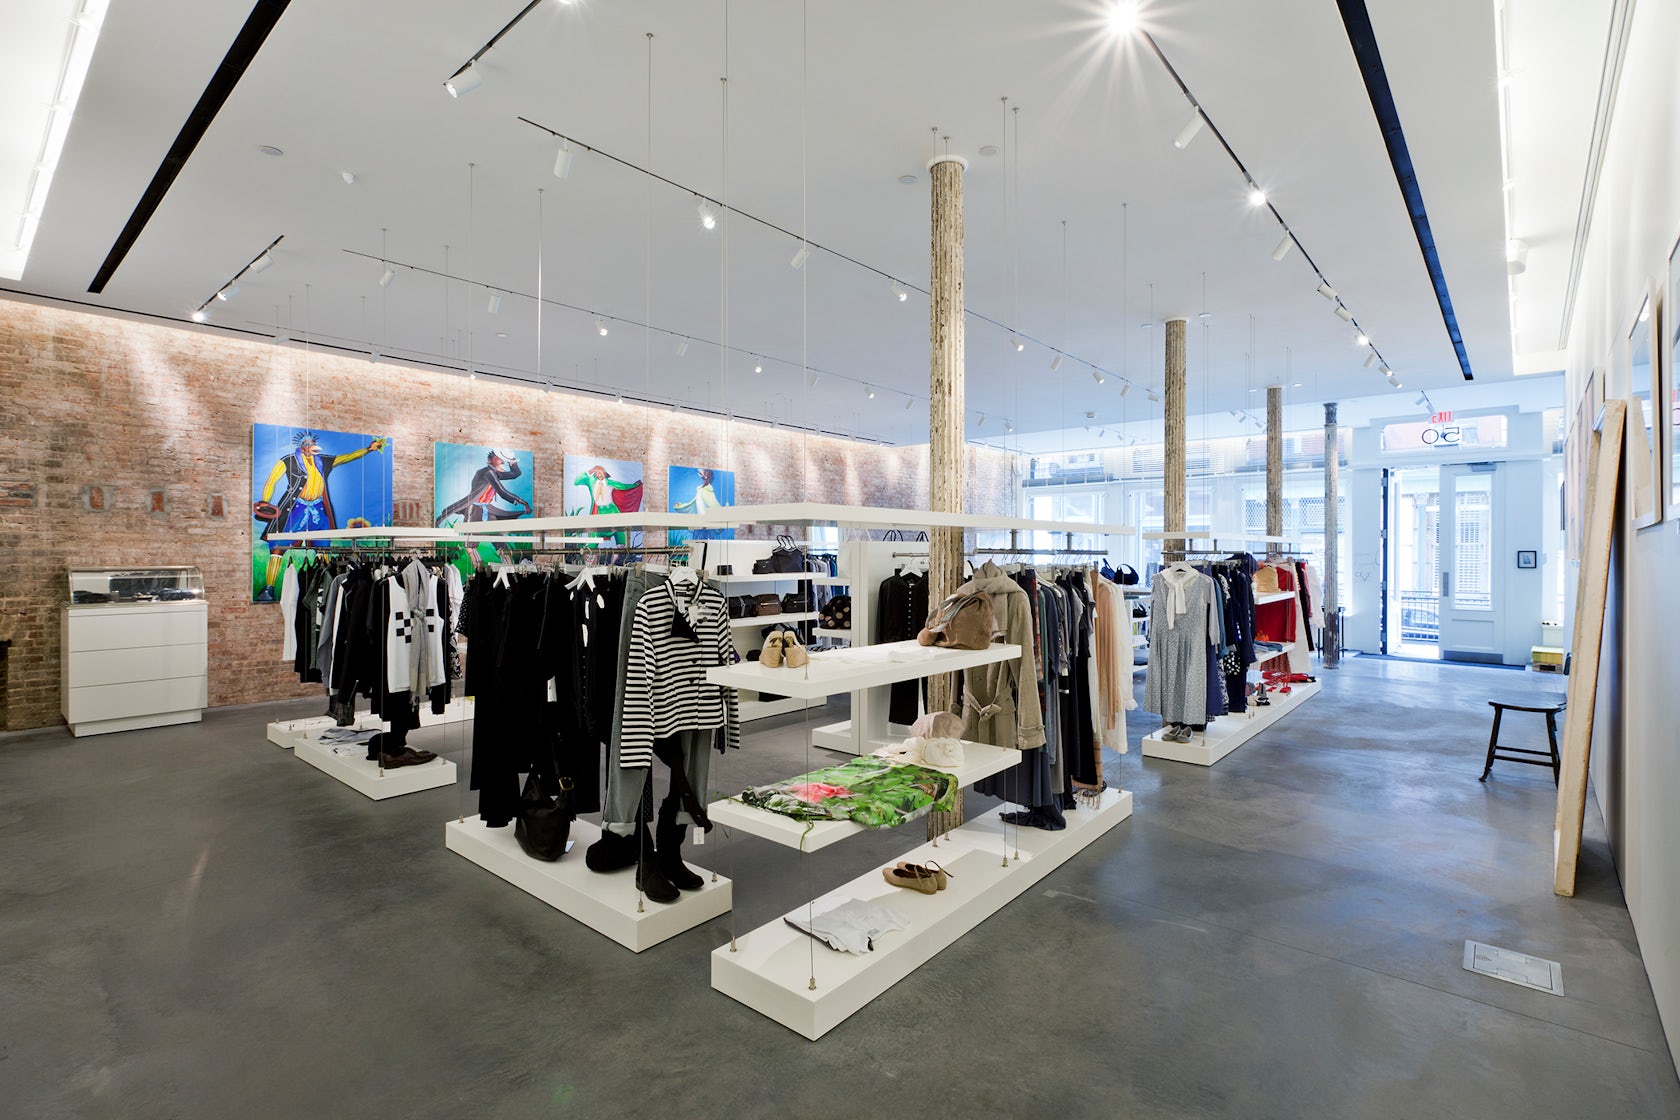 Openings: Agnès B – Howard St. “Galerie Boutique” Launch